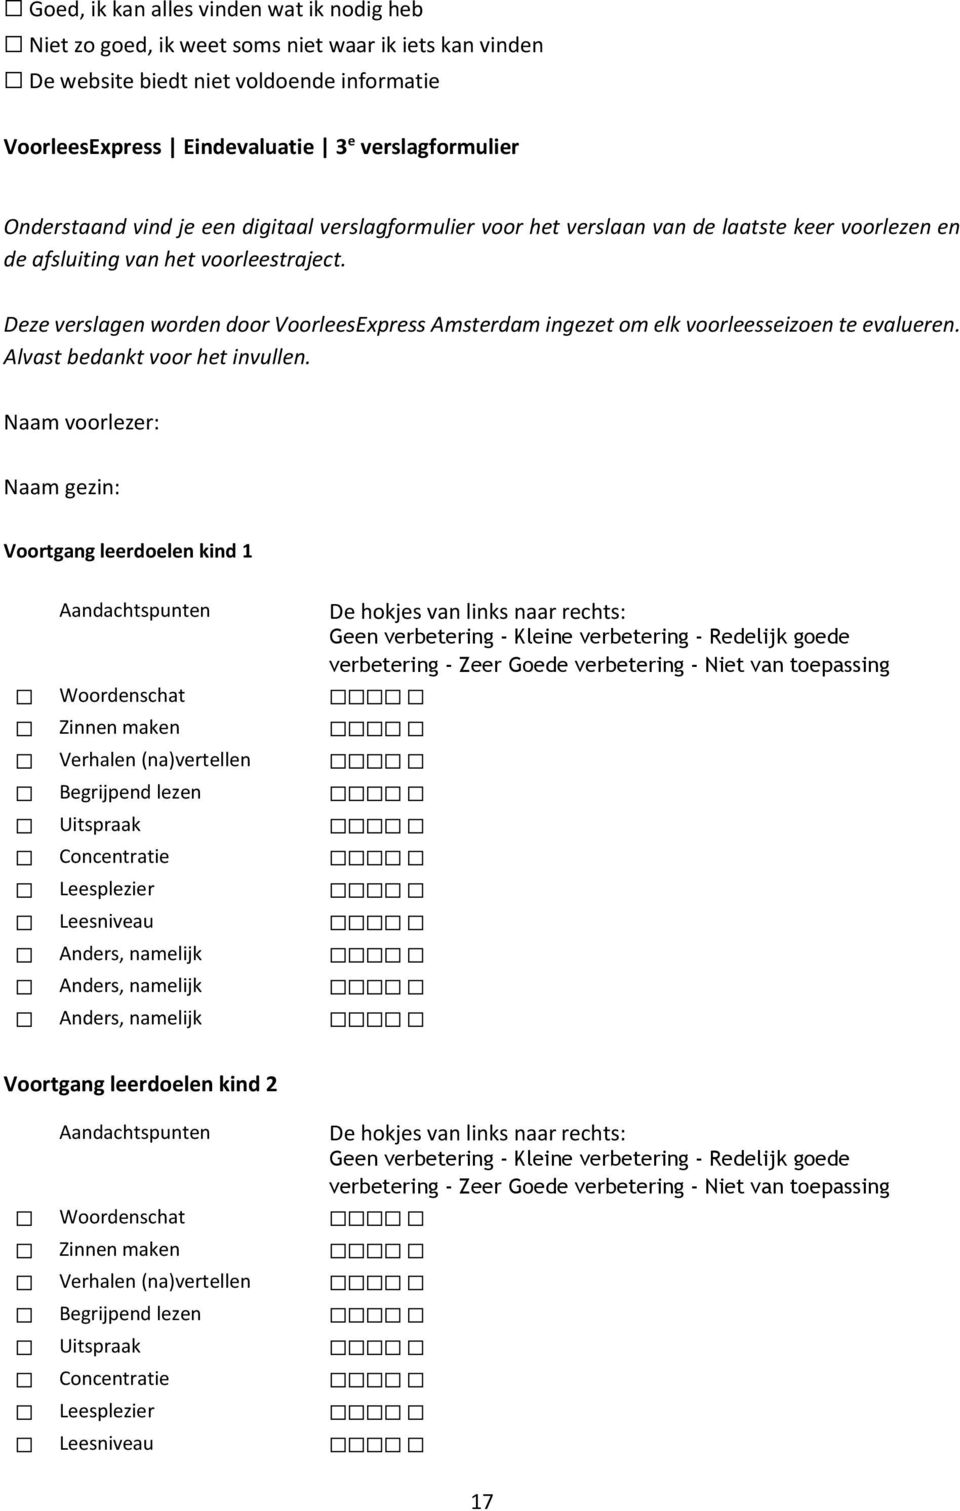 Deze verslagen worden door VoorleesExpress Amsterdam ingezet om elk voorleesseizoen te evalueren. Alvast bedankt voor het invullen.